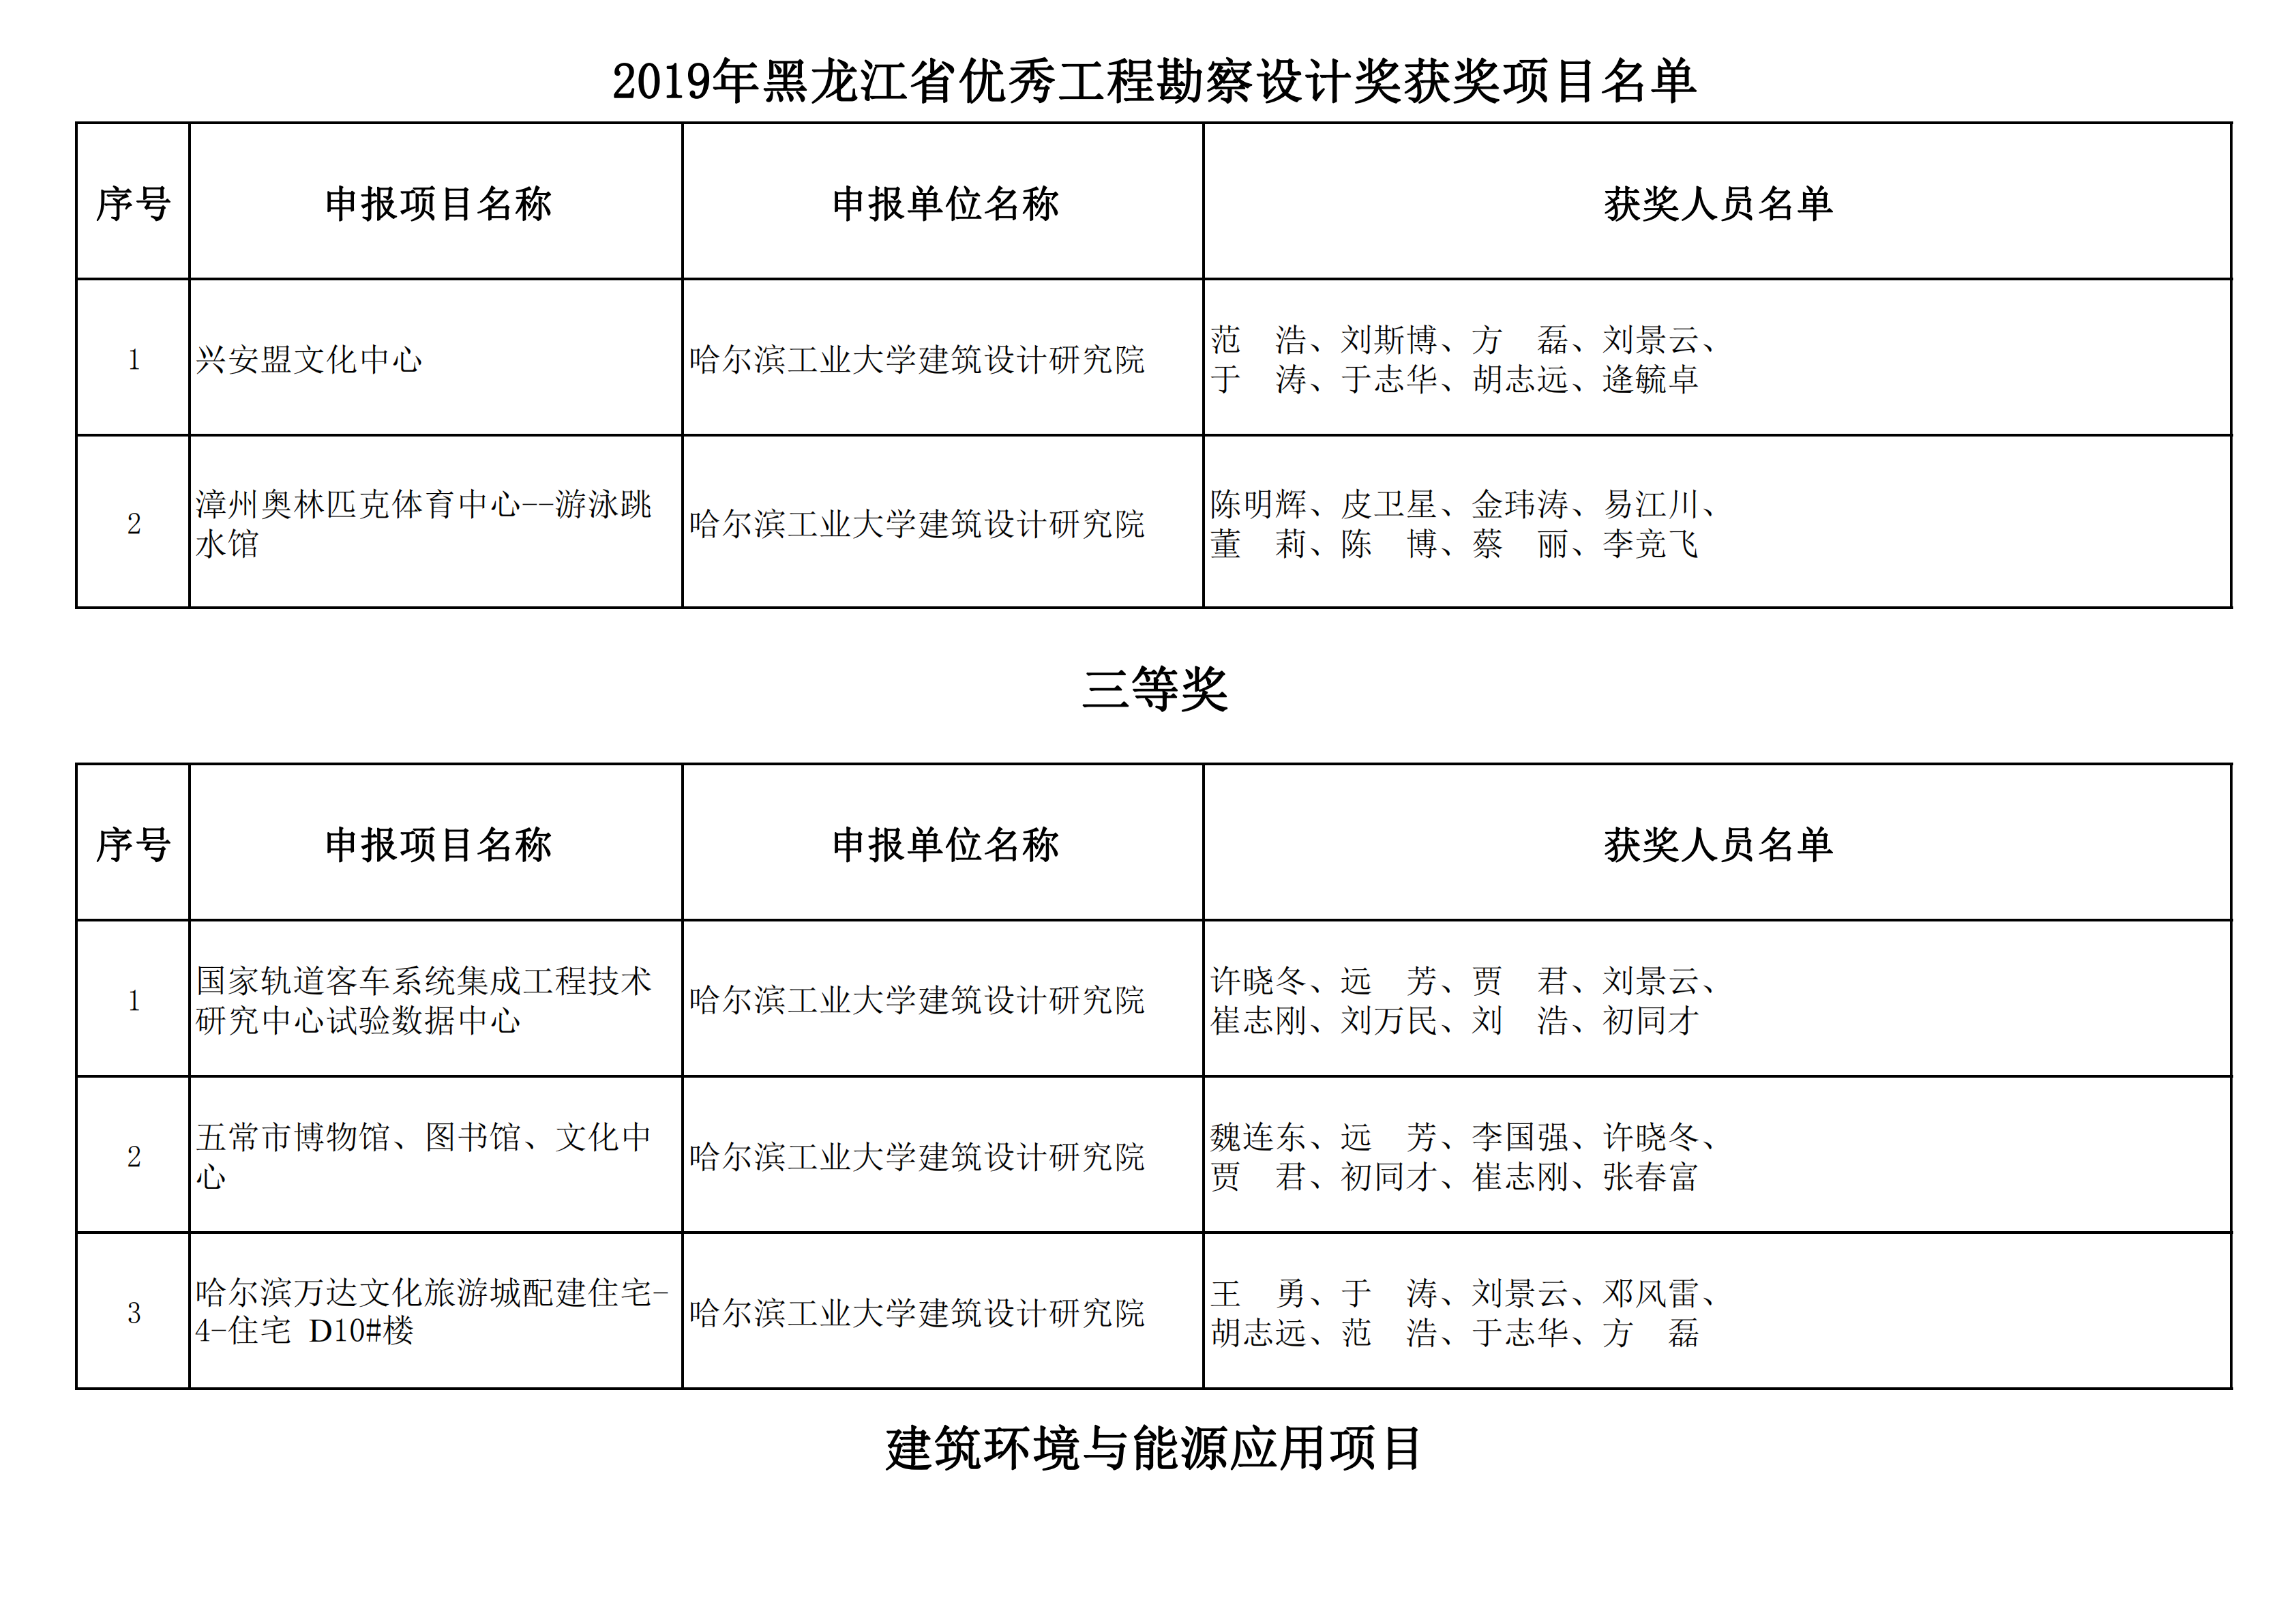 2019年黑龙江省优秀工程勘察设计奖获奖项目名单_05.png